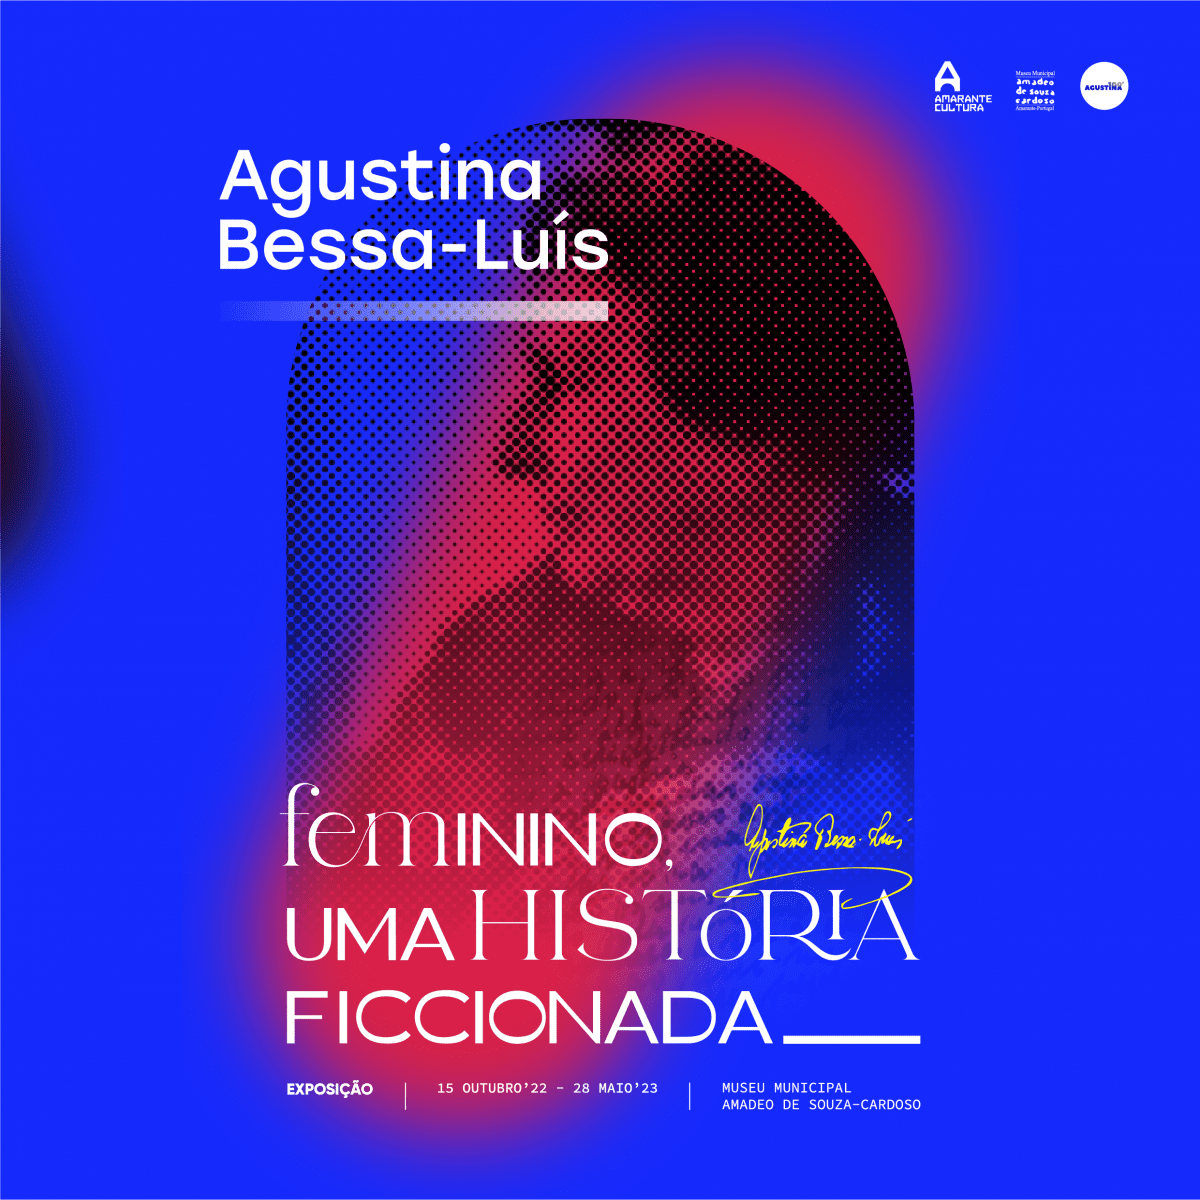 Amarante assinala centenário de Agustina Bessa-Luís com três exposições